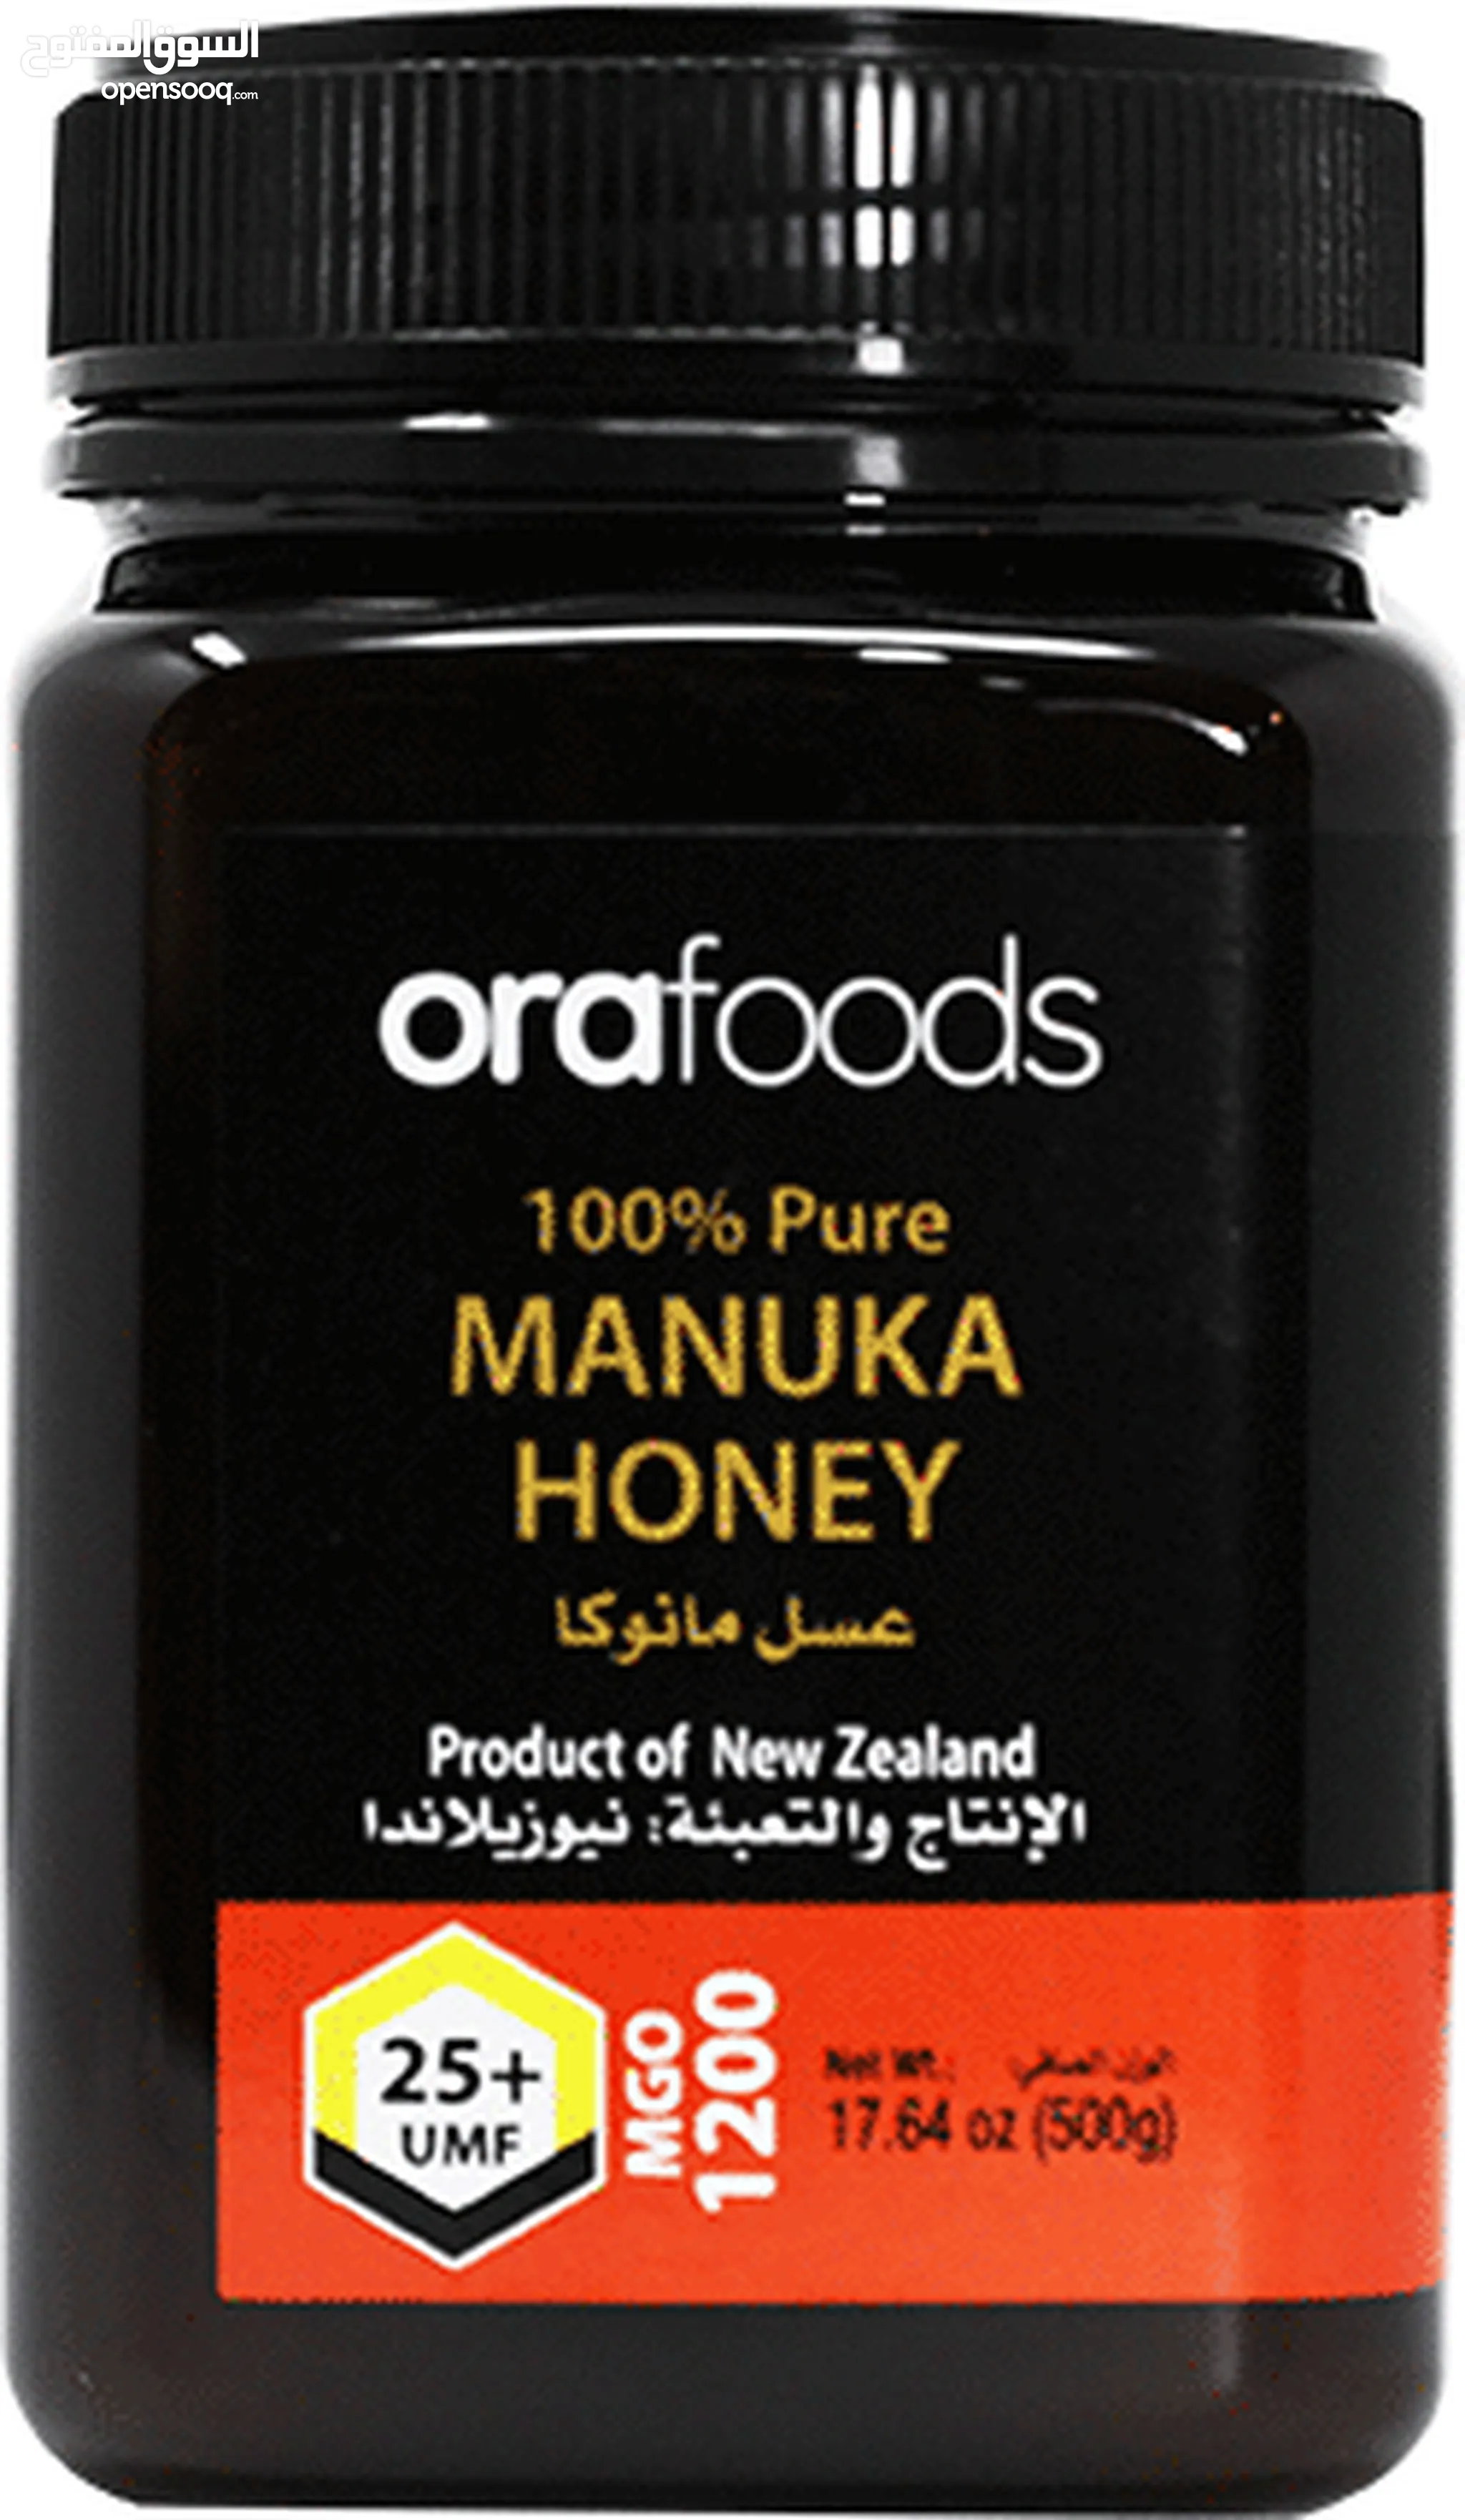 افضل انواع العسل للبيع : عسل طبيعي : عسل ملكي : سدر : مانوكا : عسل أبيض :  ارخص الاسعار في العراق | السوق المفتوح